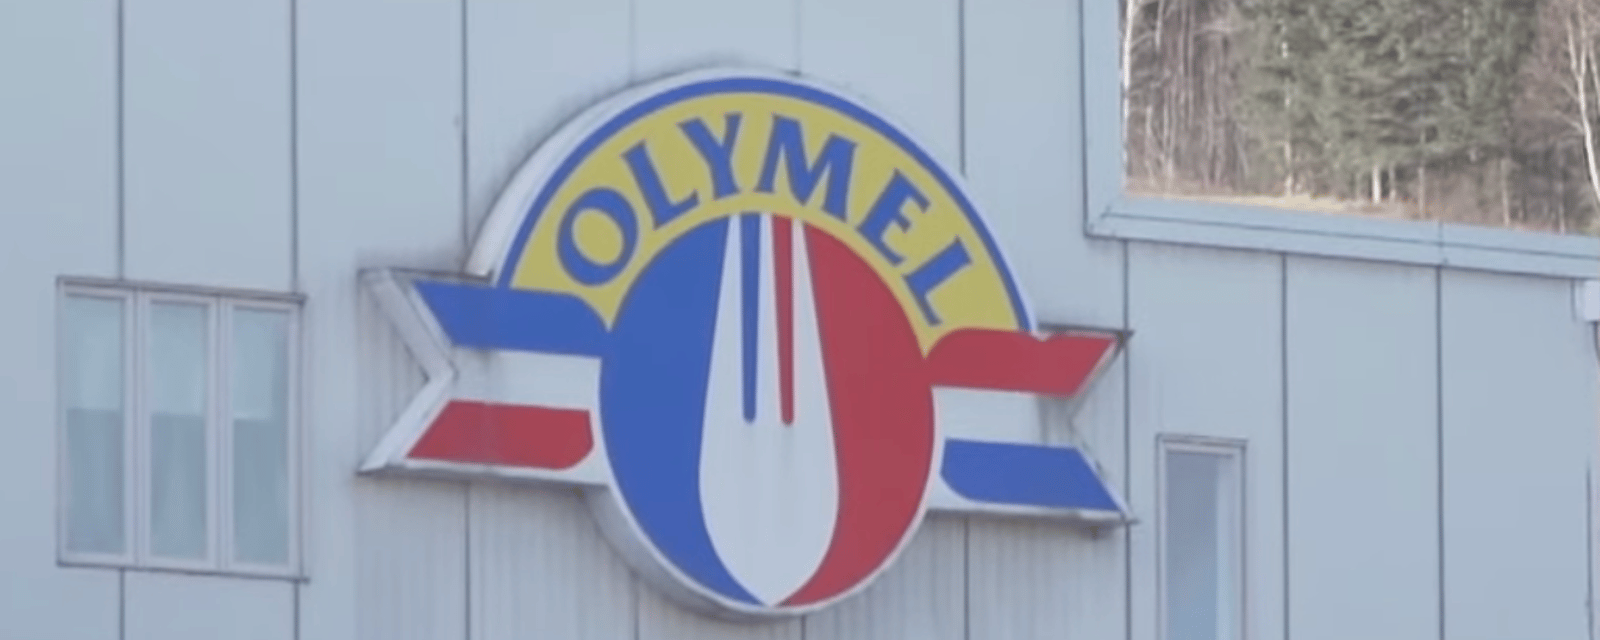 42 travailleurs de Drummondville perdent leur emploi chez Olymel au profit de l'Ontario.